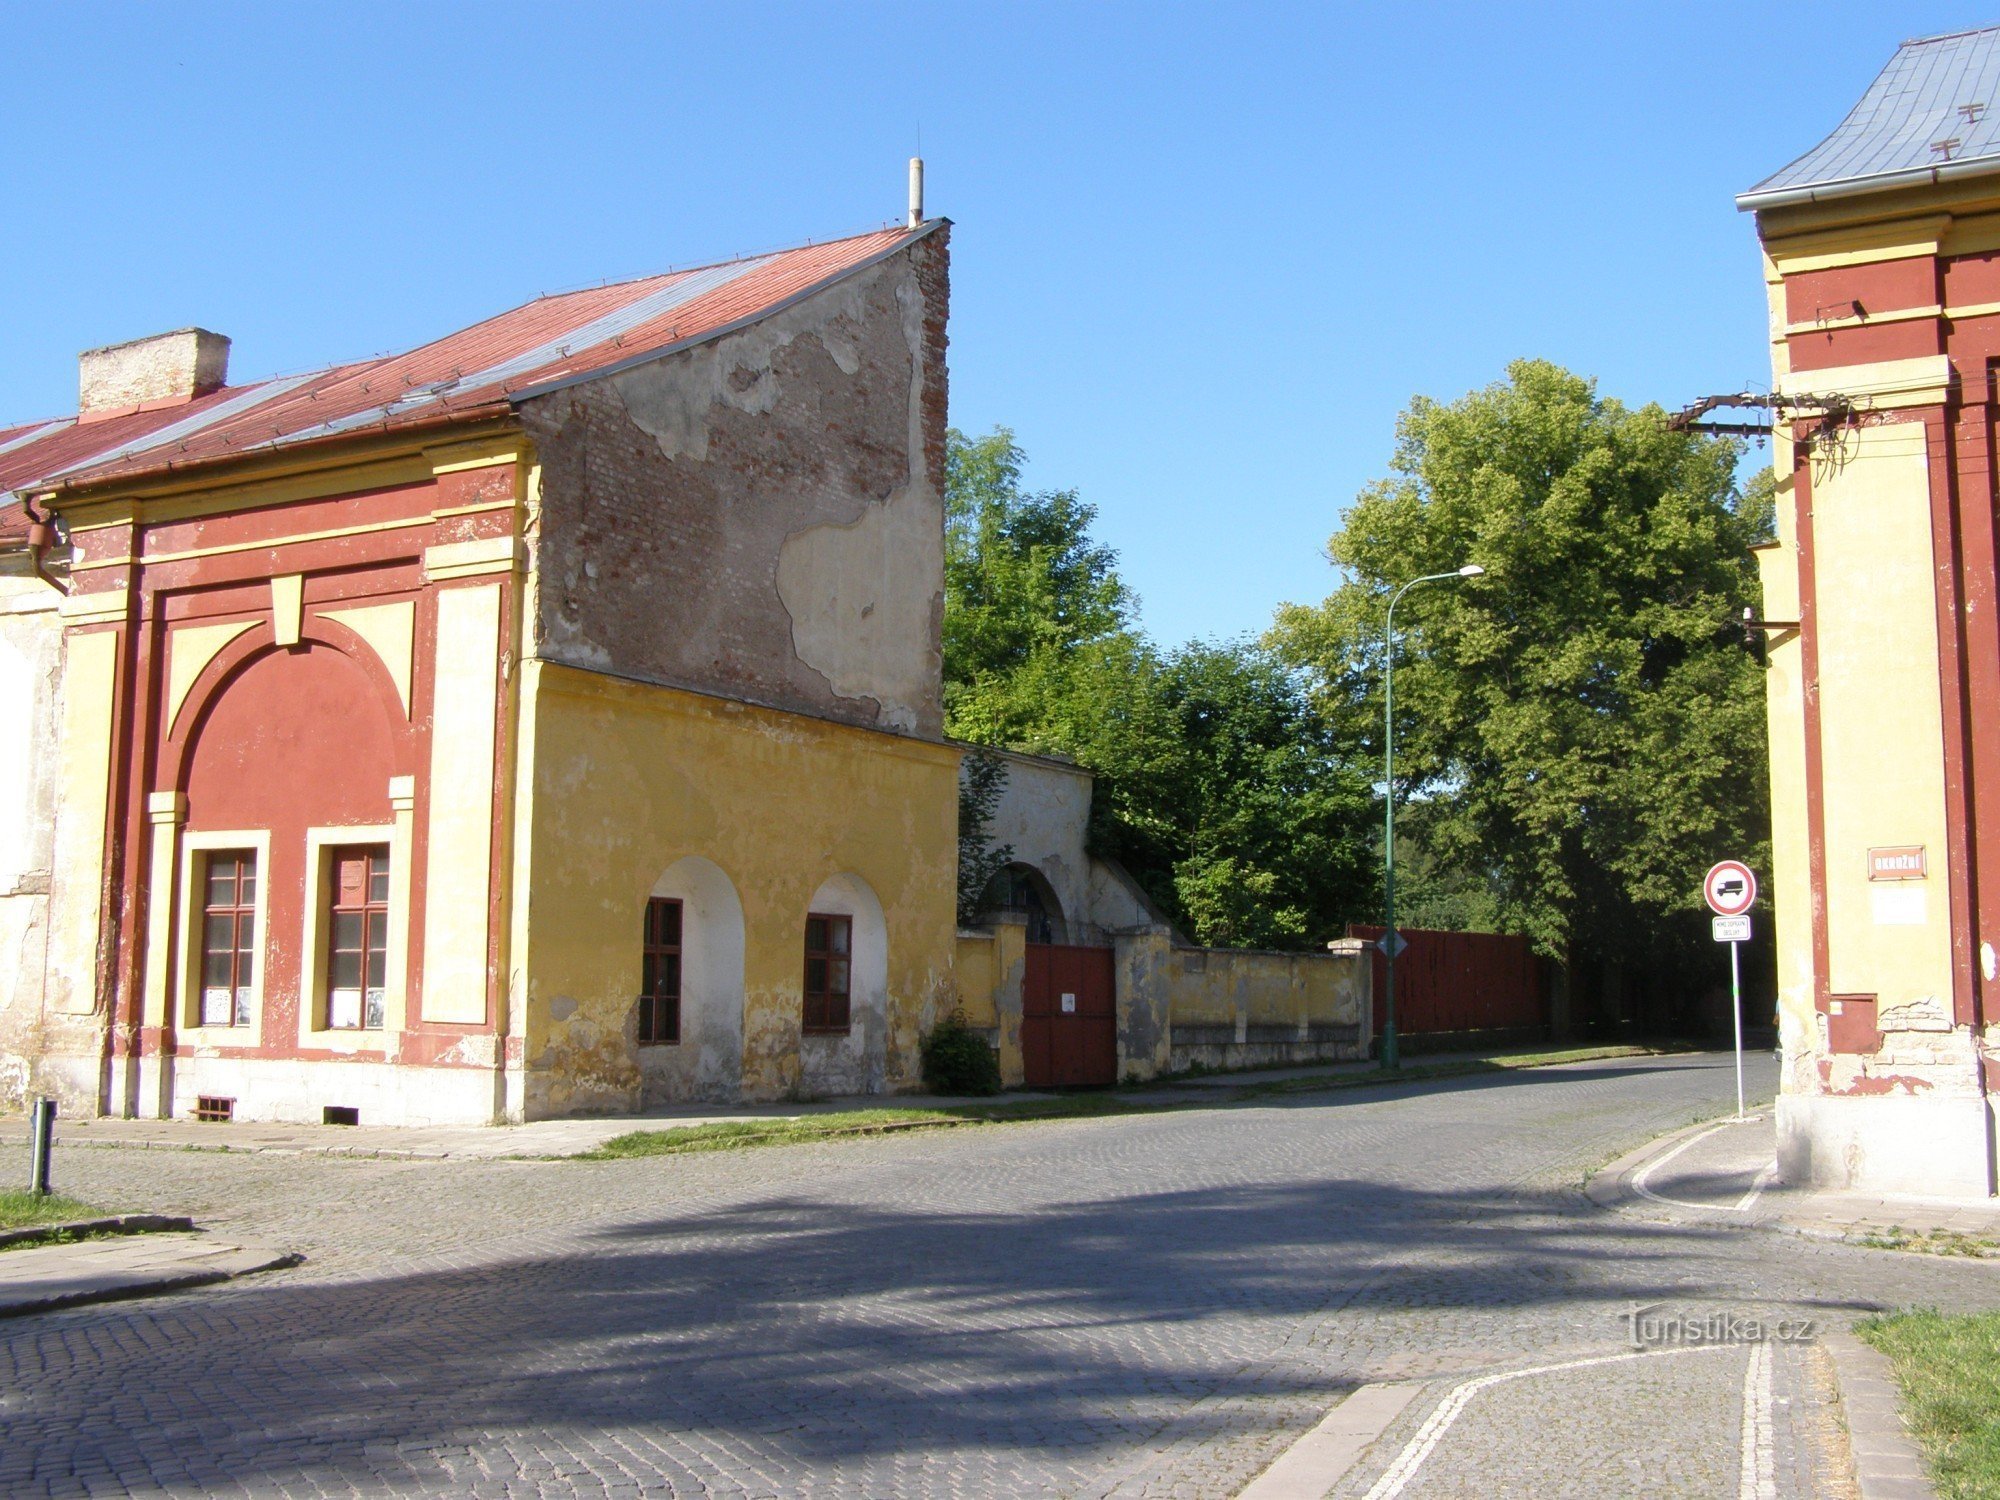 Josefov - Hradecká-porten